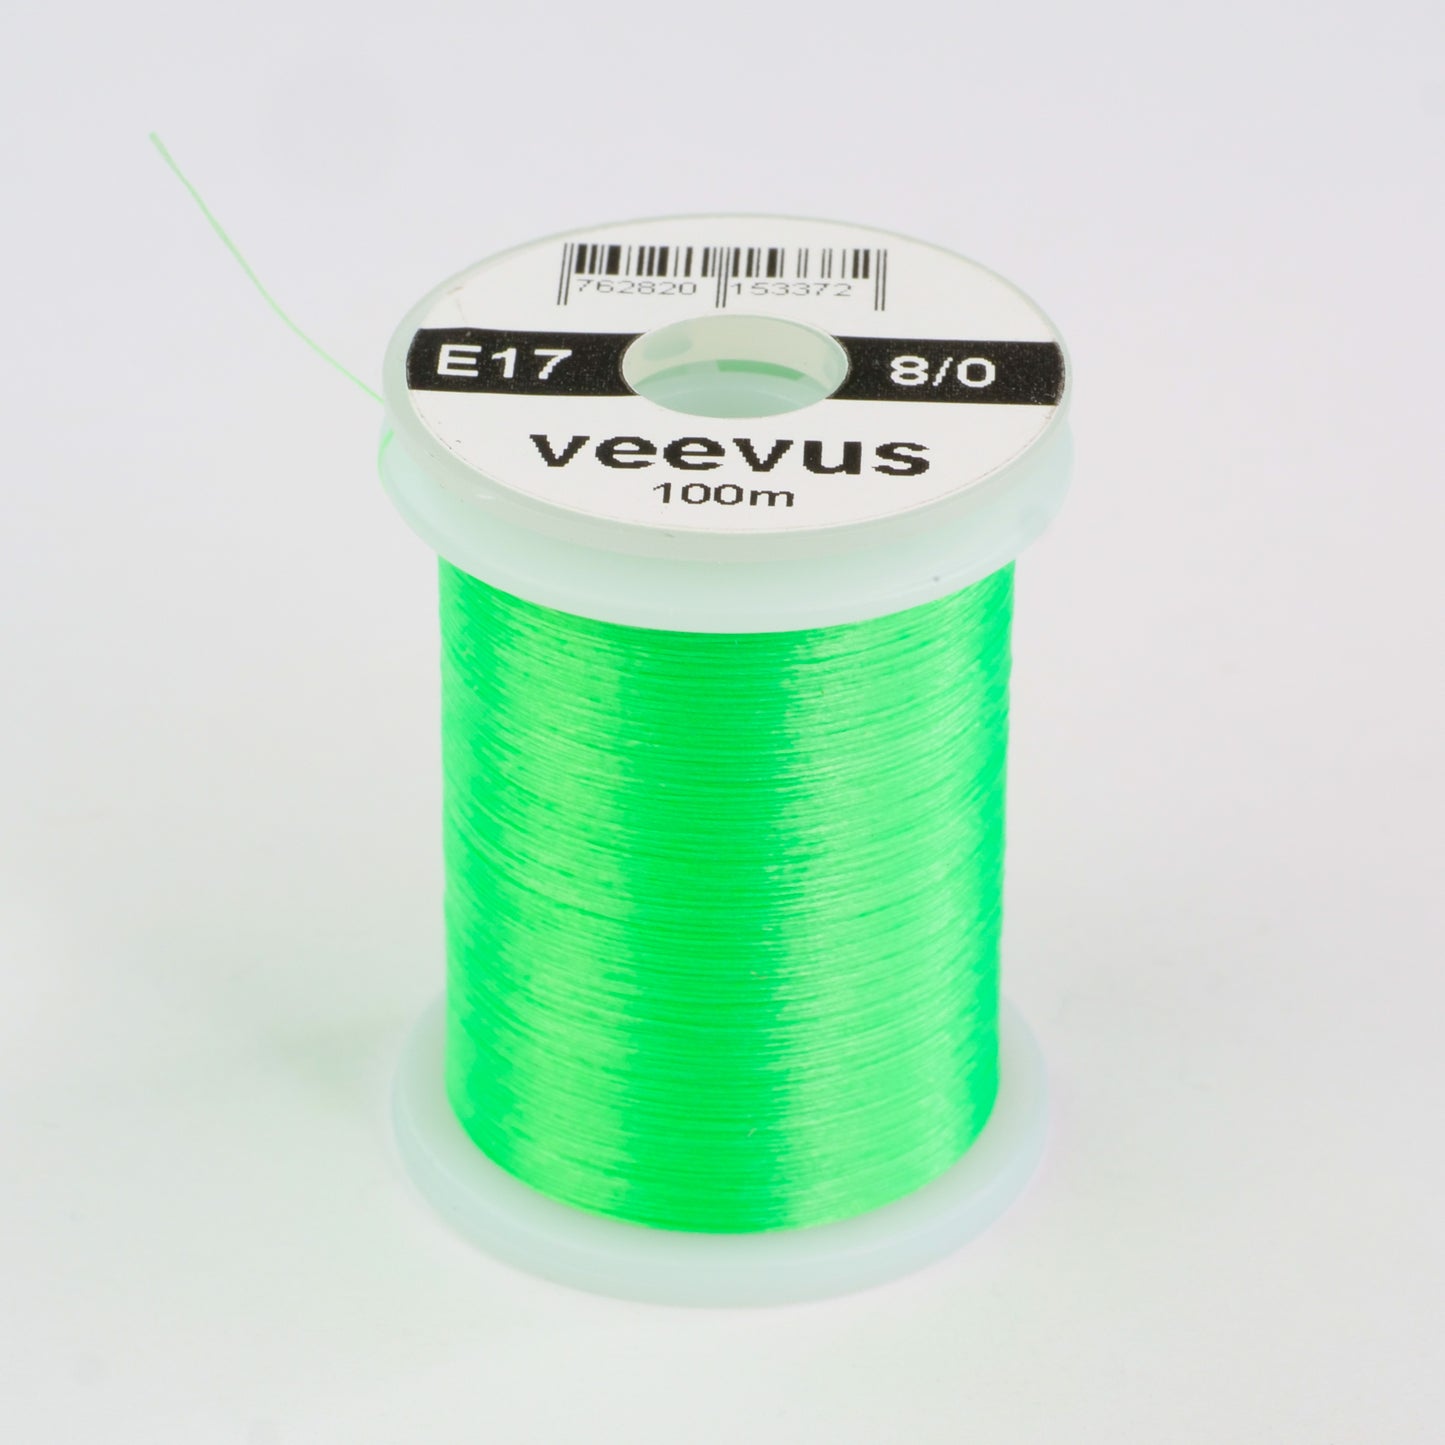 Veevus 8/0 Thread Black